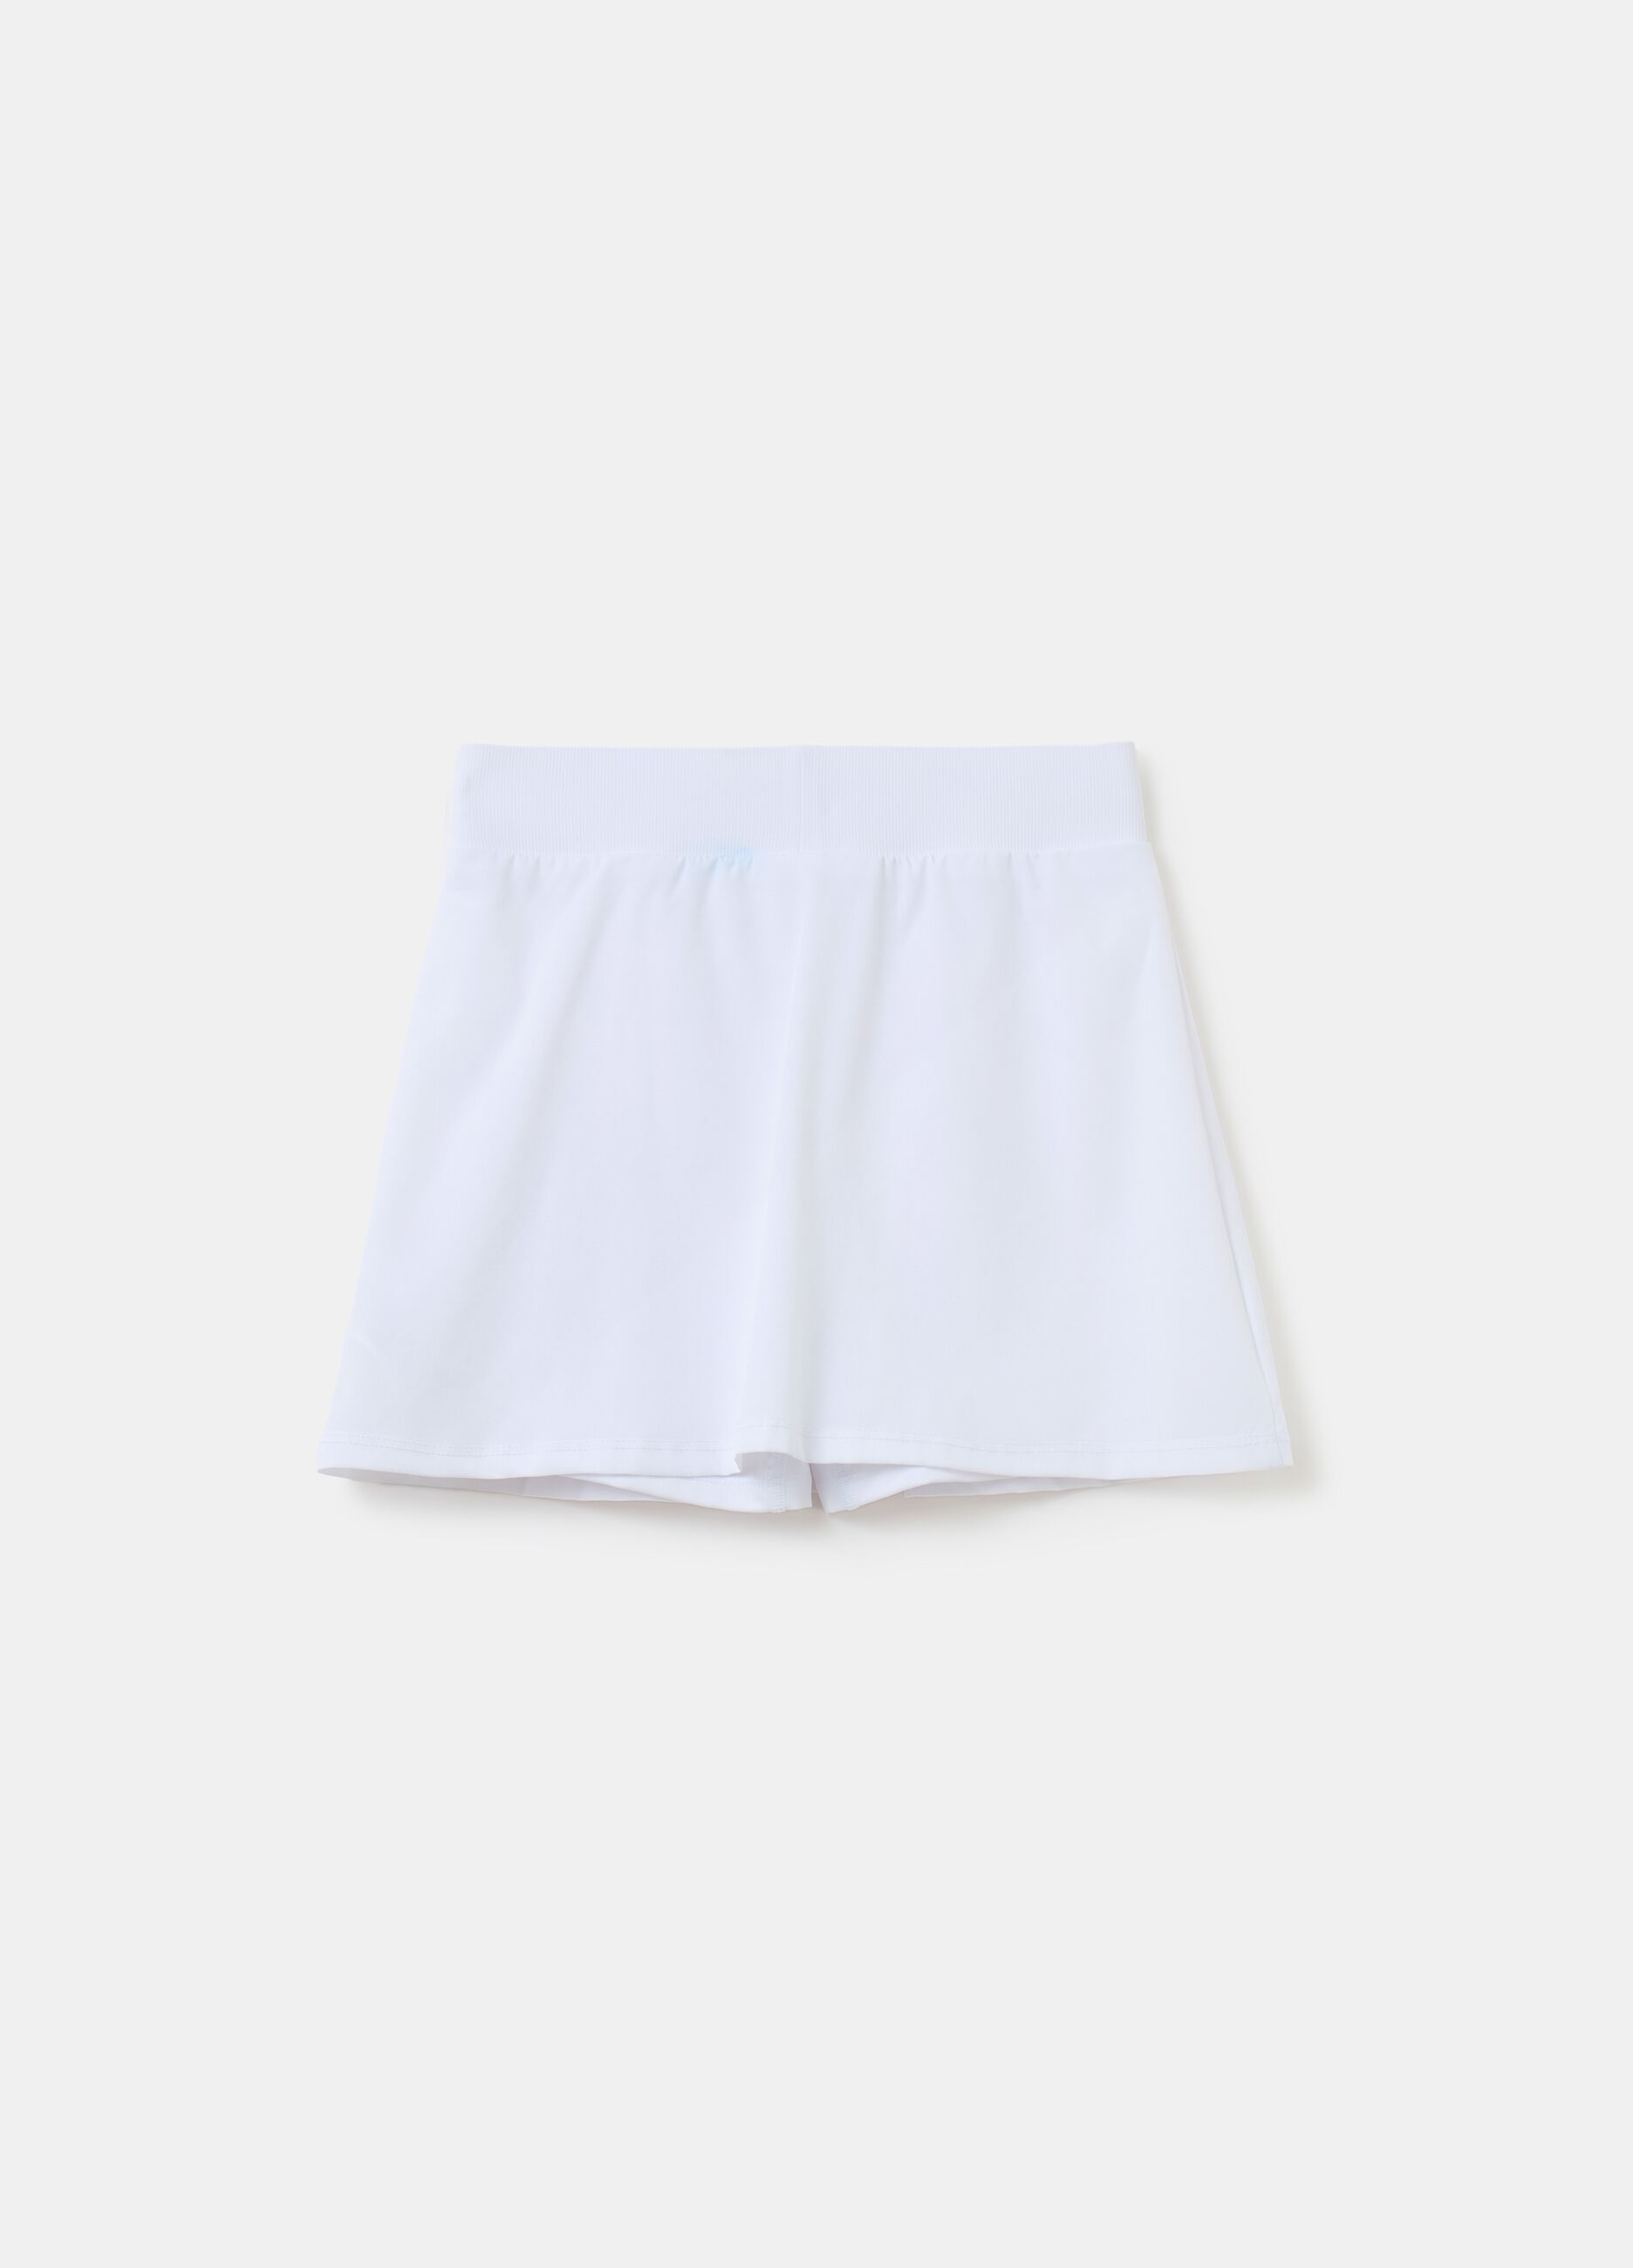 Slazenger short tennis skirt